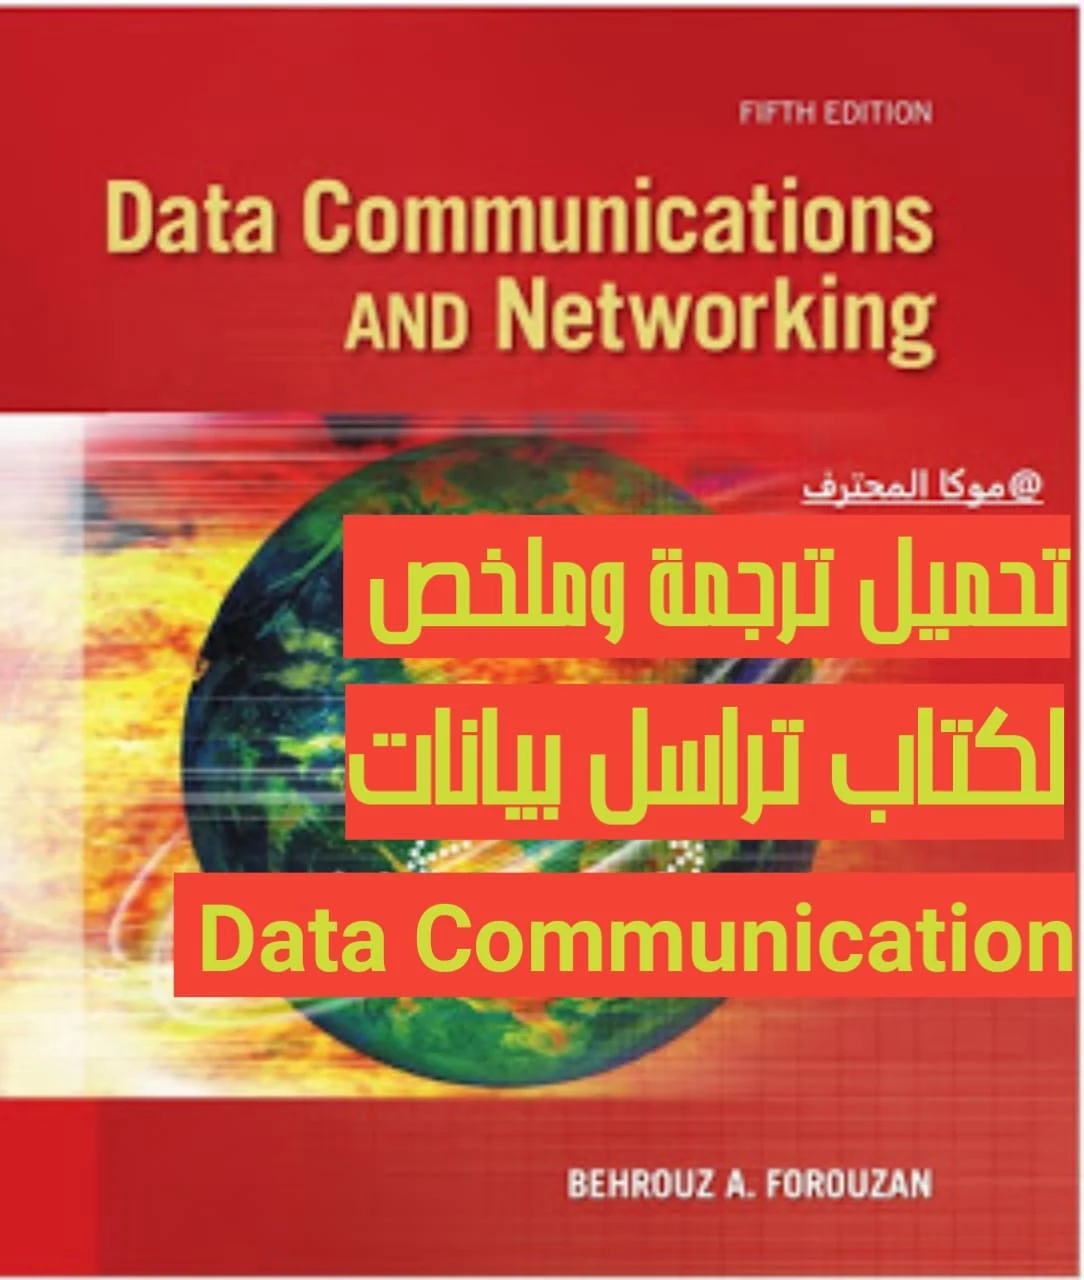 ترجمة وملخص لكتاب تراسل بيانات Data Communication